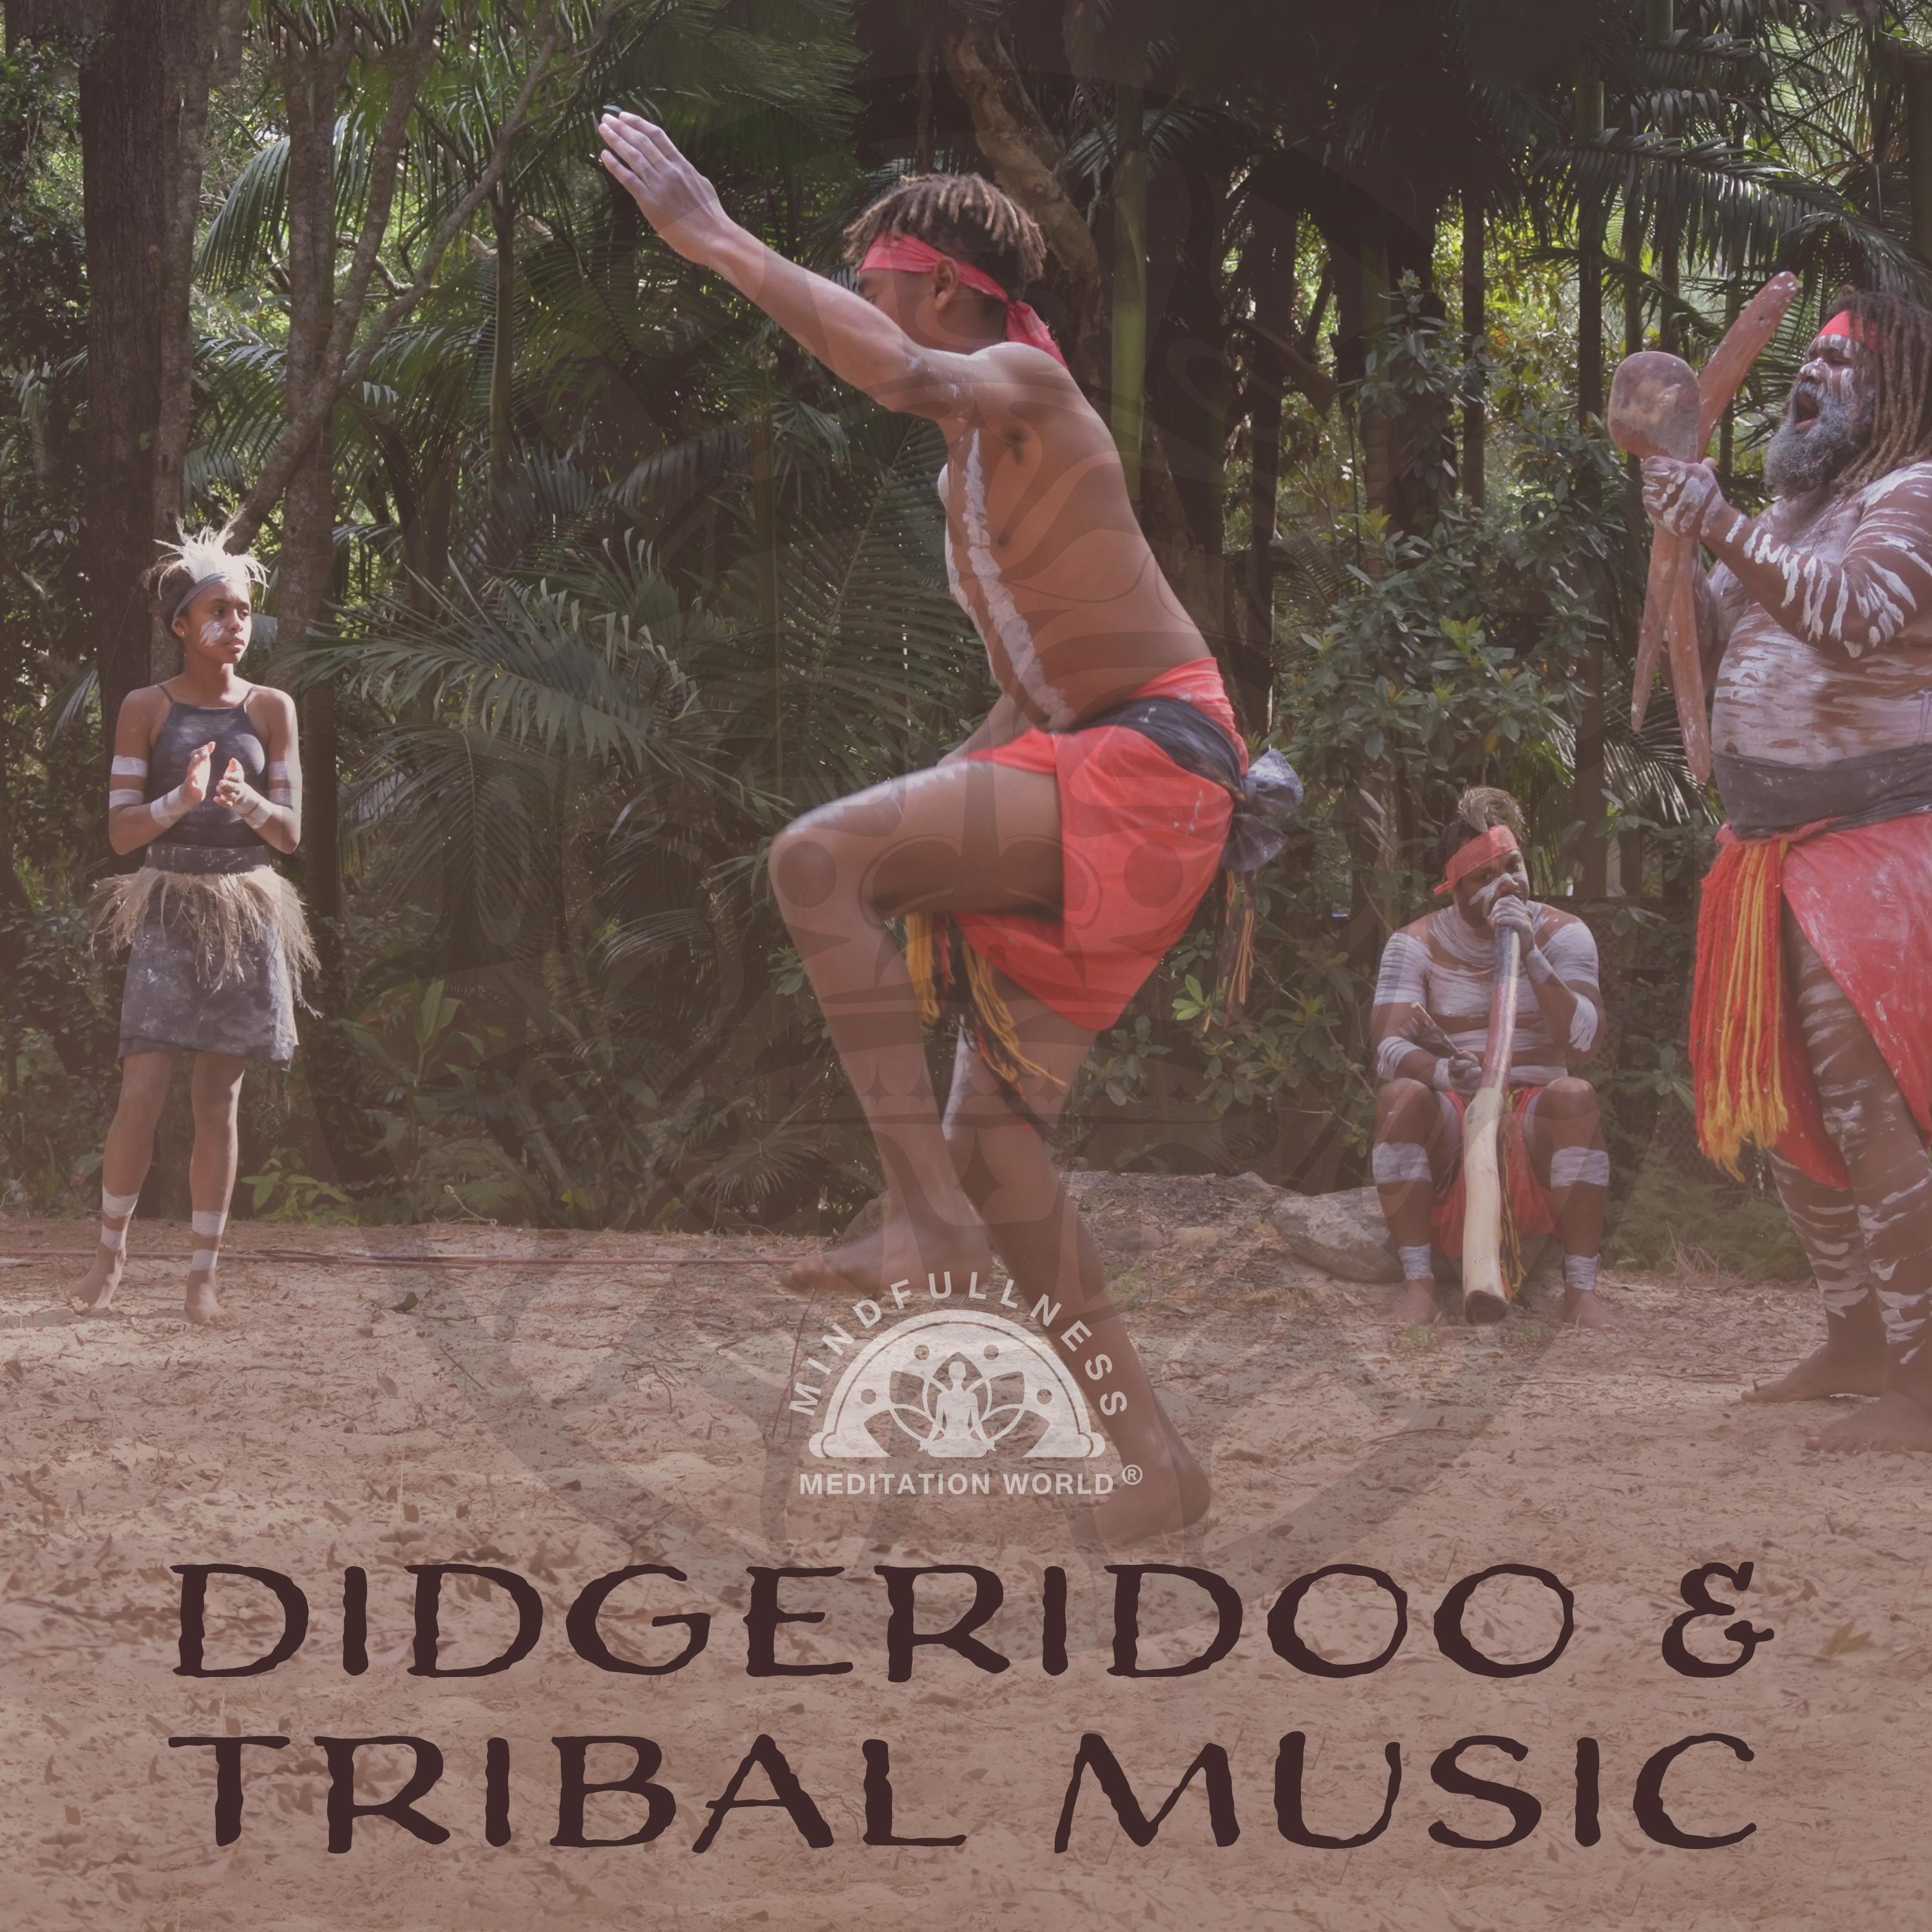 Aboriginal Dance